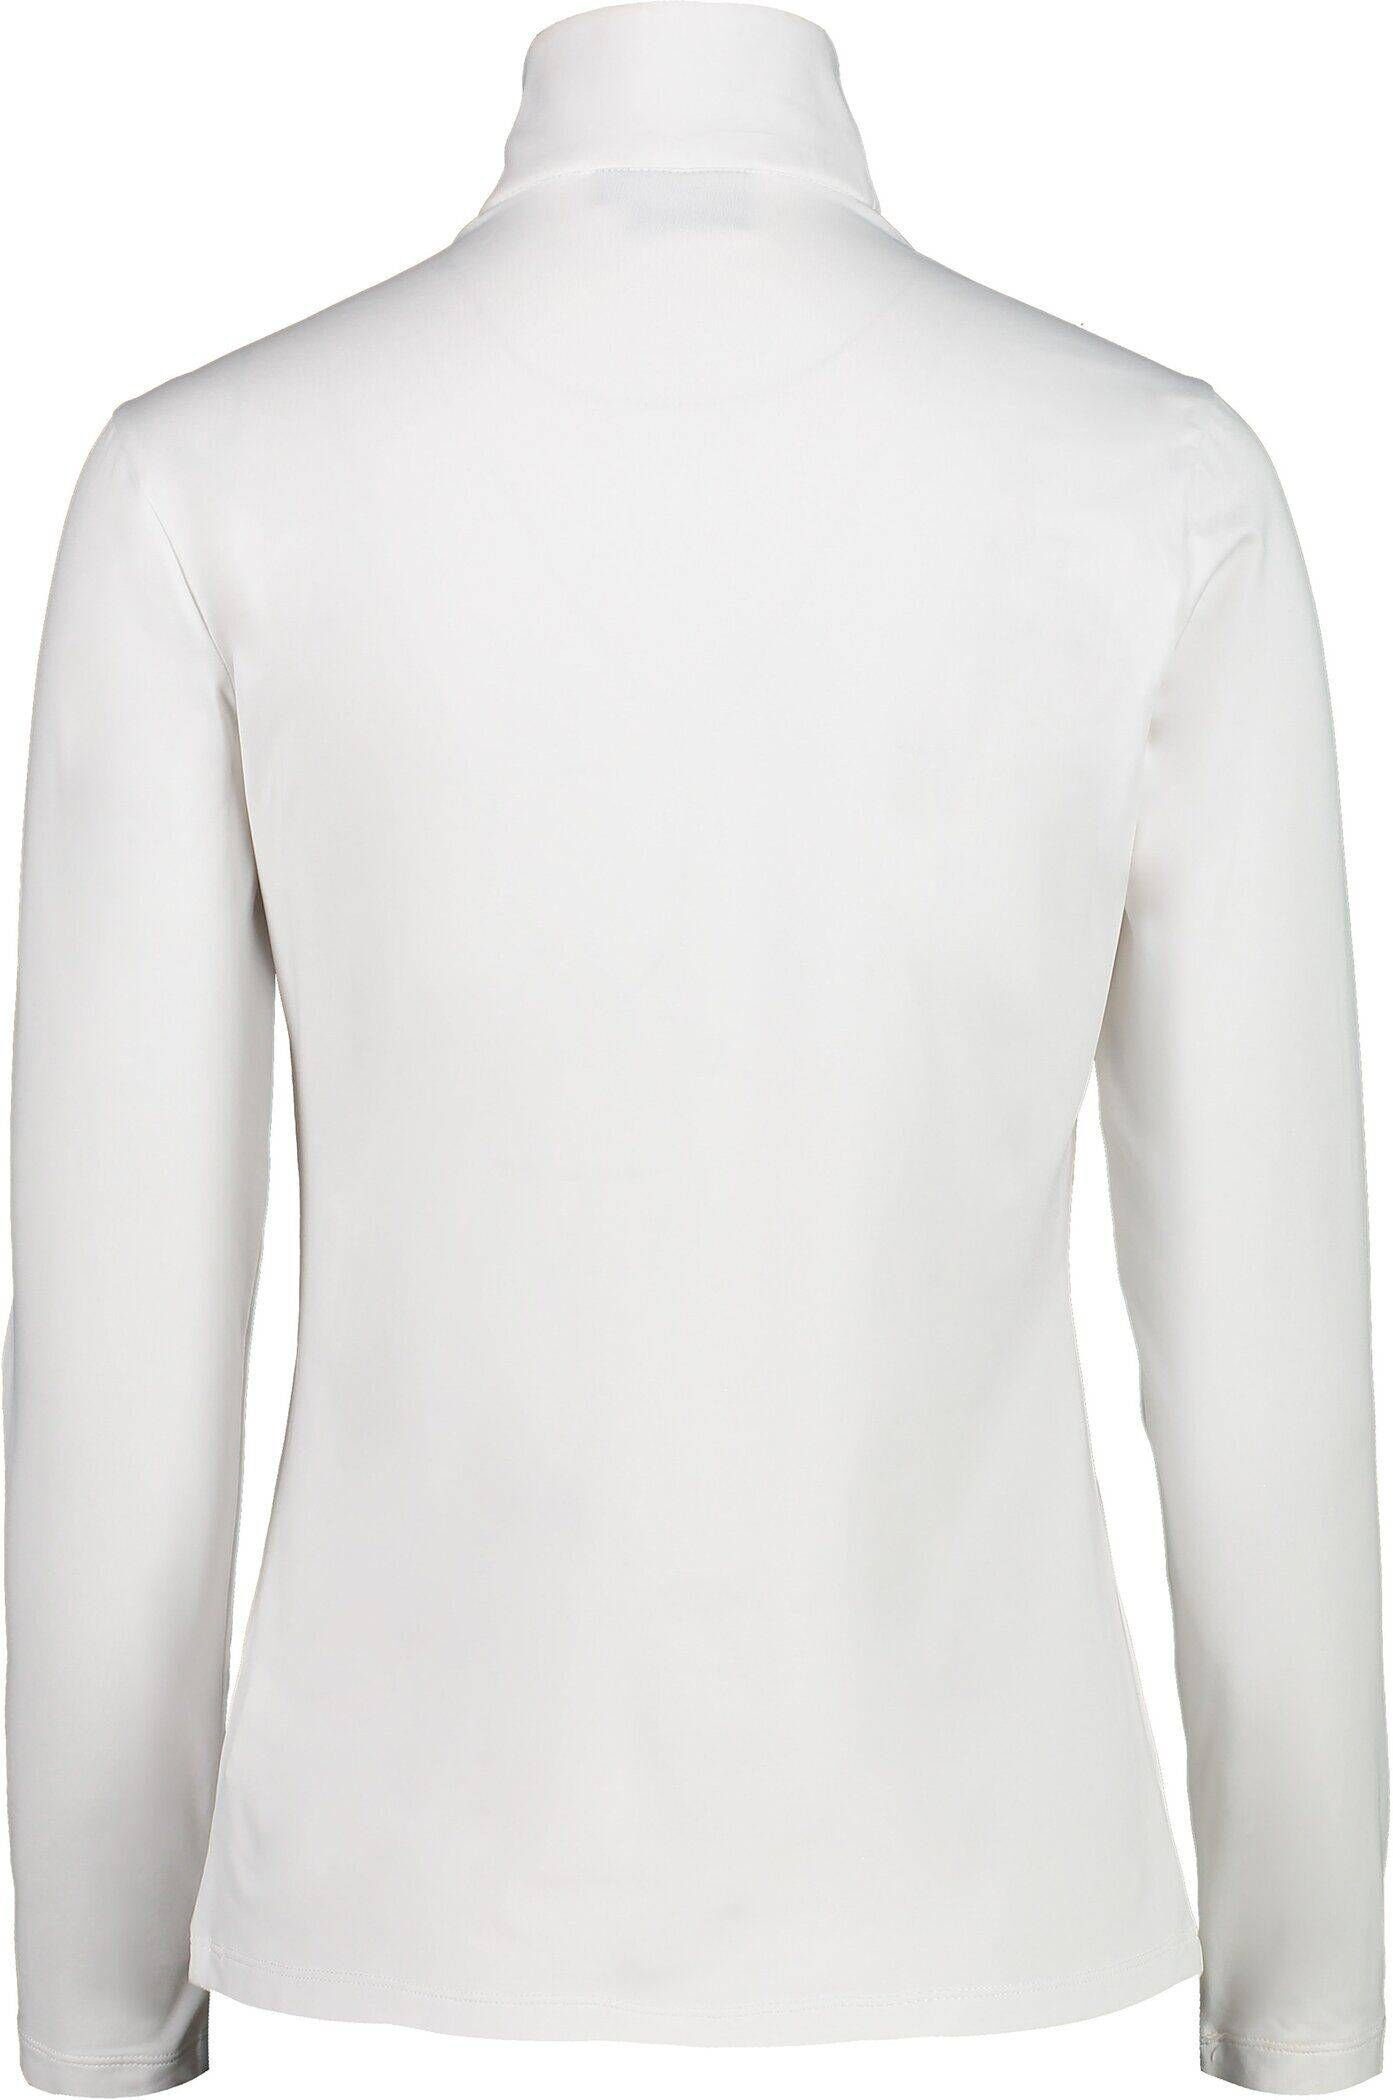 Damen CMP Trainingsjacke Sweatshirt weiß (100)